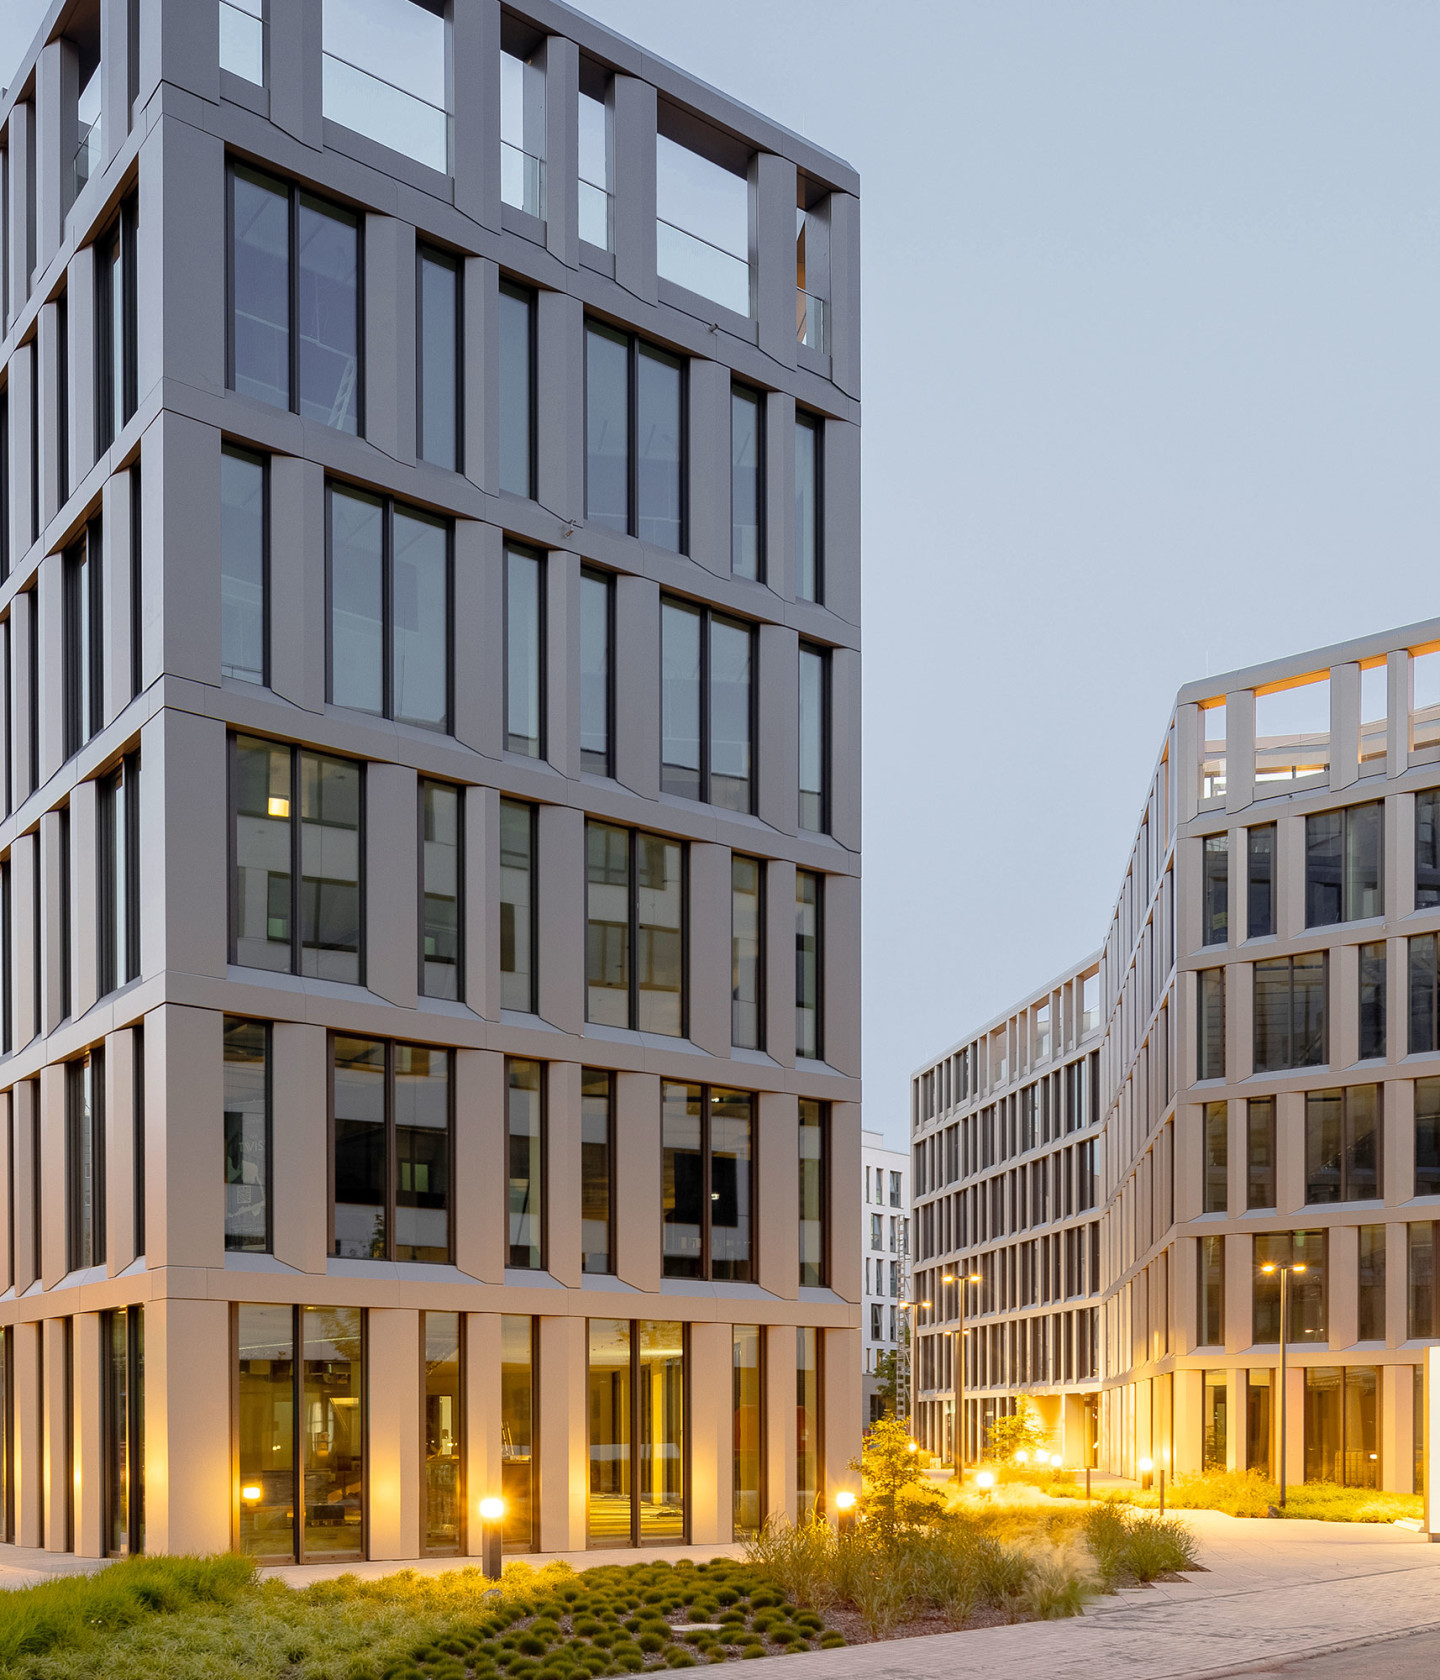 Bild: The Twist, zwei einander zugewandte Bürogebäude in Eschborn mit Grünflächen